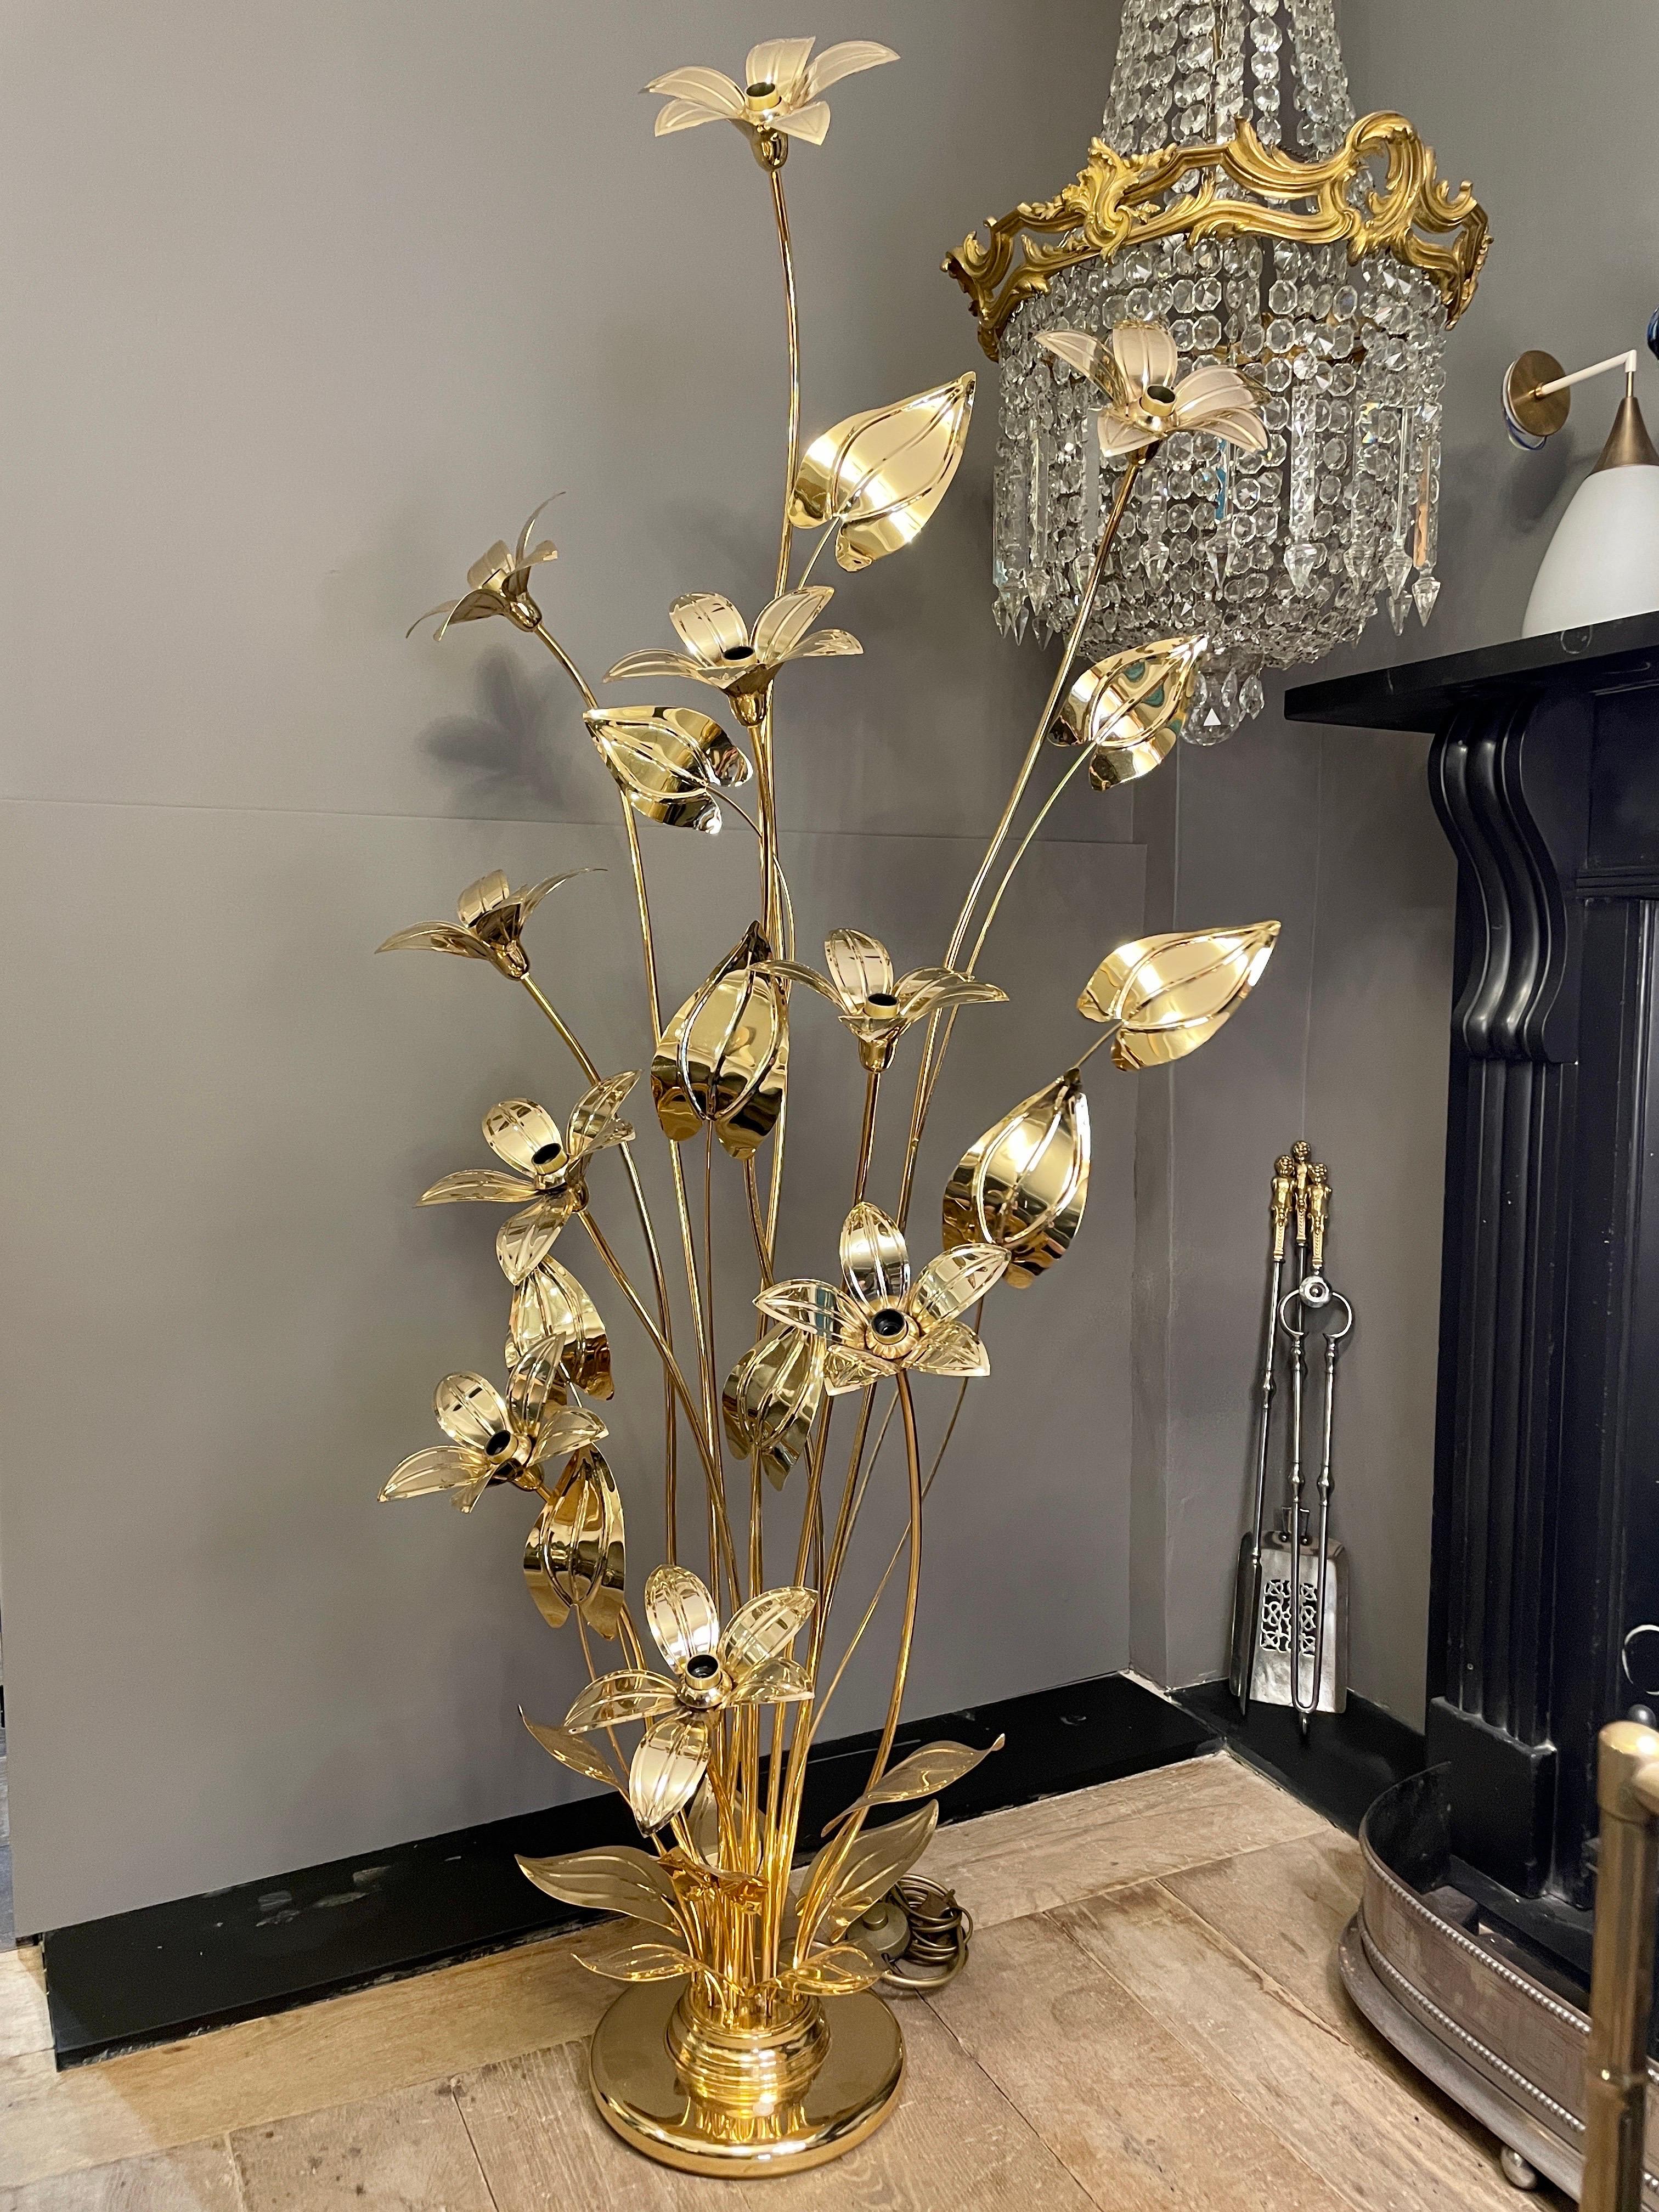 Eine hohe florale Stehlampe mit 10 Leuchten in Form von Blütenköpfen mit Stängeln und Blättern, die alle mit dem gleichen hohen Lack überzogen sind. In außergewöhnlichem Zustand. Wiederverkauft  von Les Arcades, einem hochwertigen Ausstellungsraum